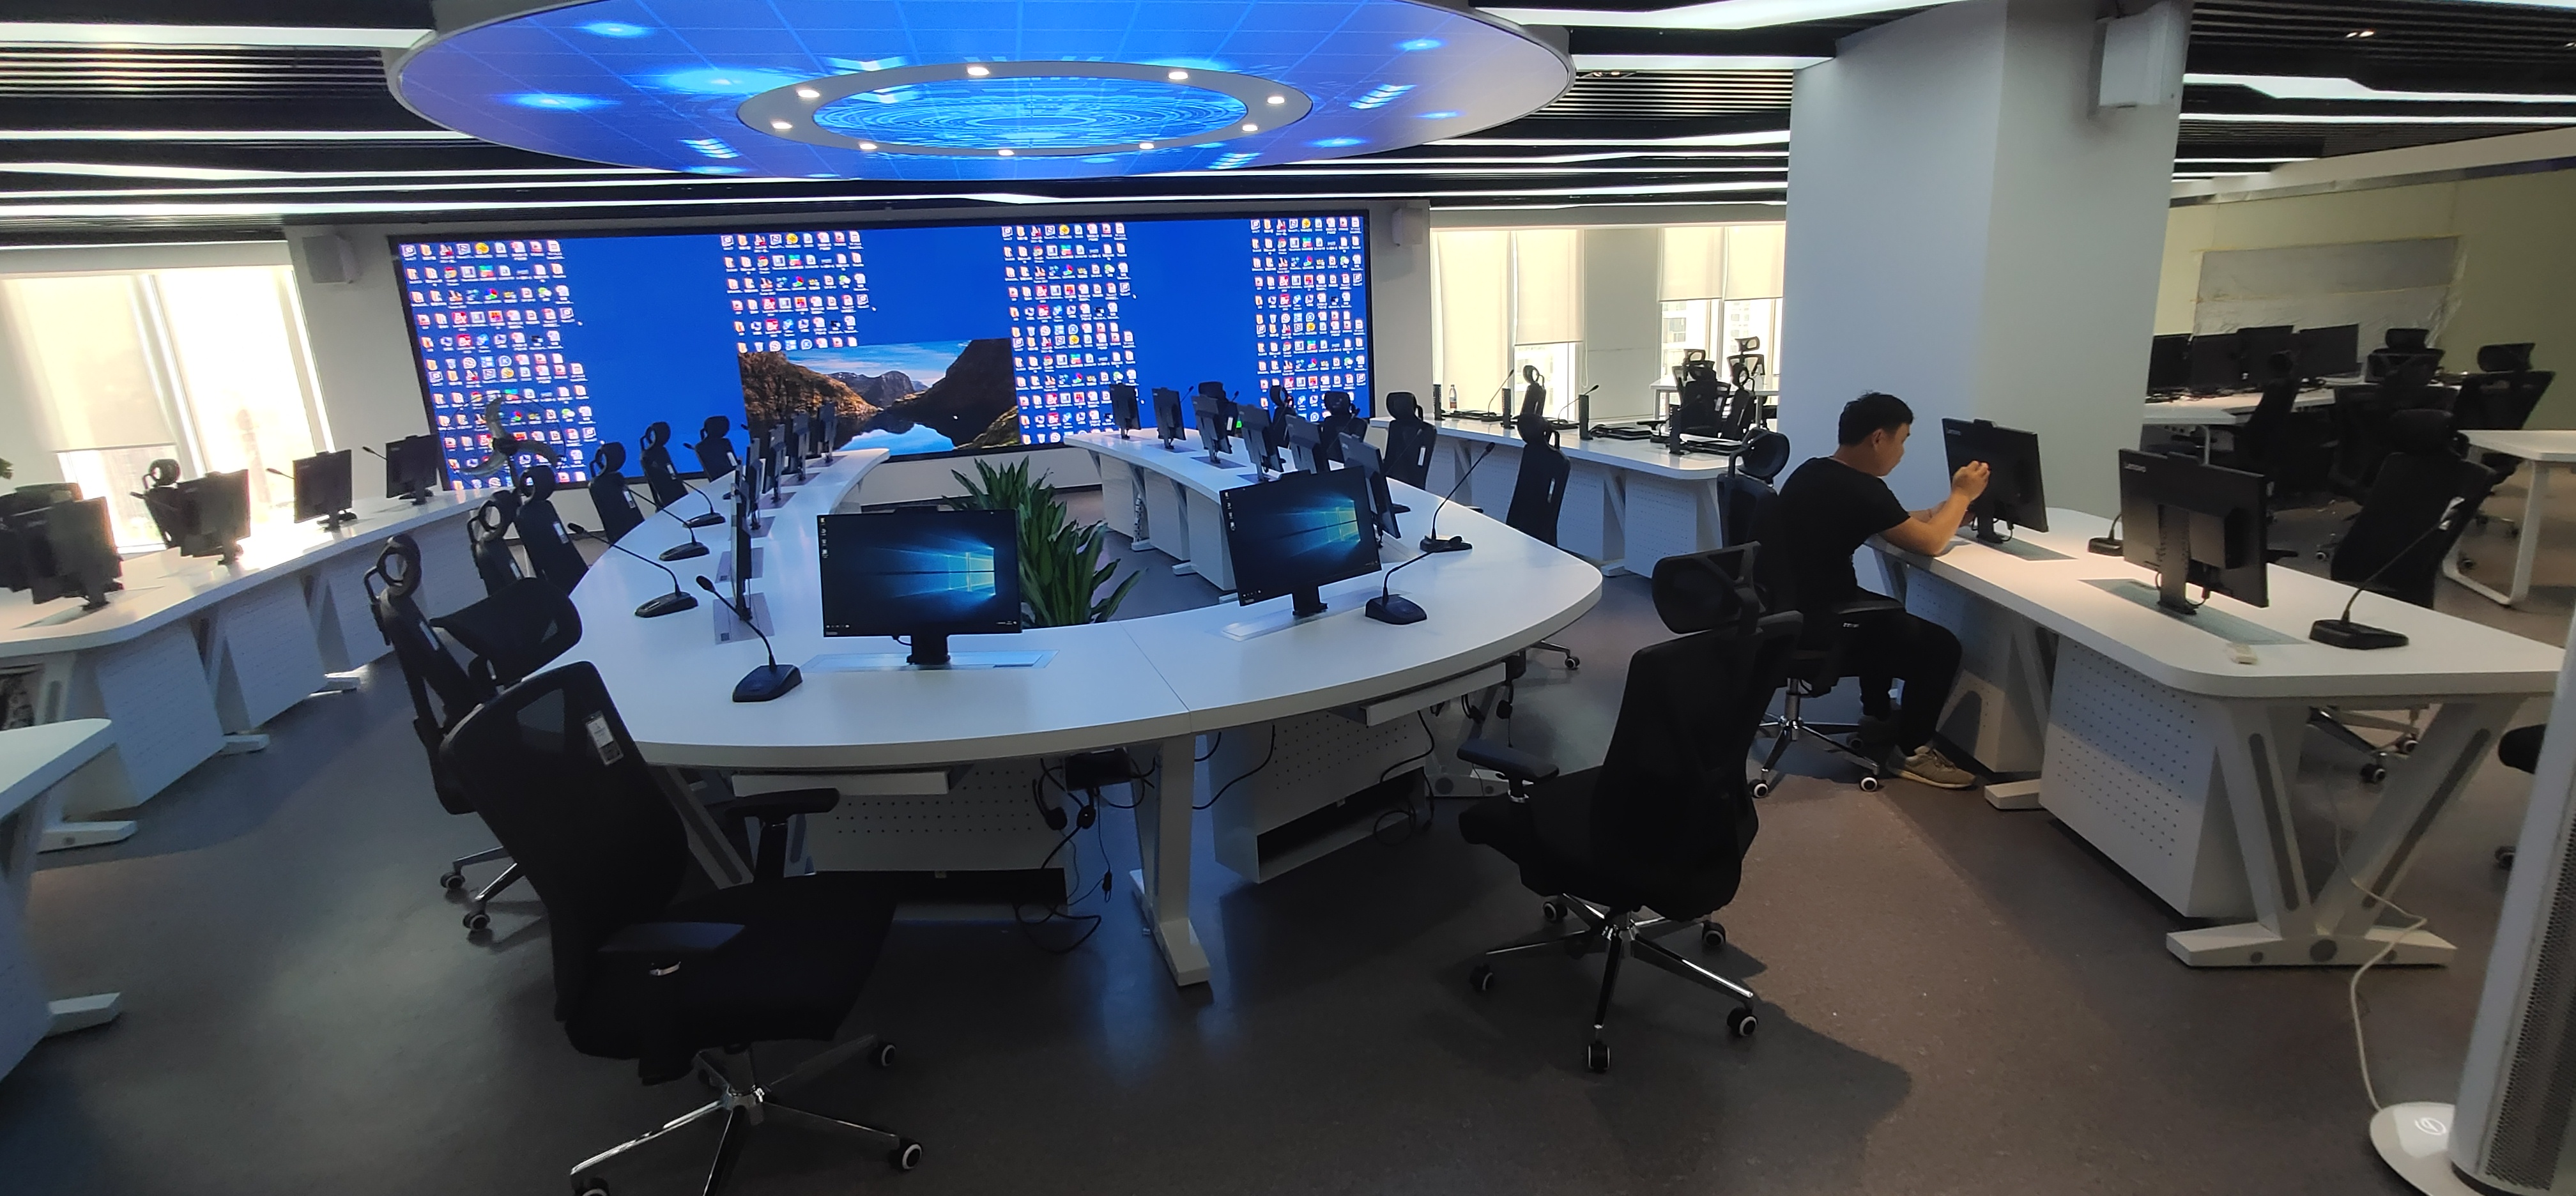 力卡WDC-900数字会议讨论系统入驻武汉市长江日报会议指挥中心 